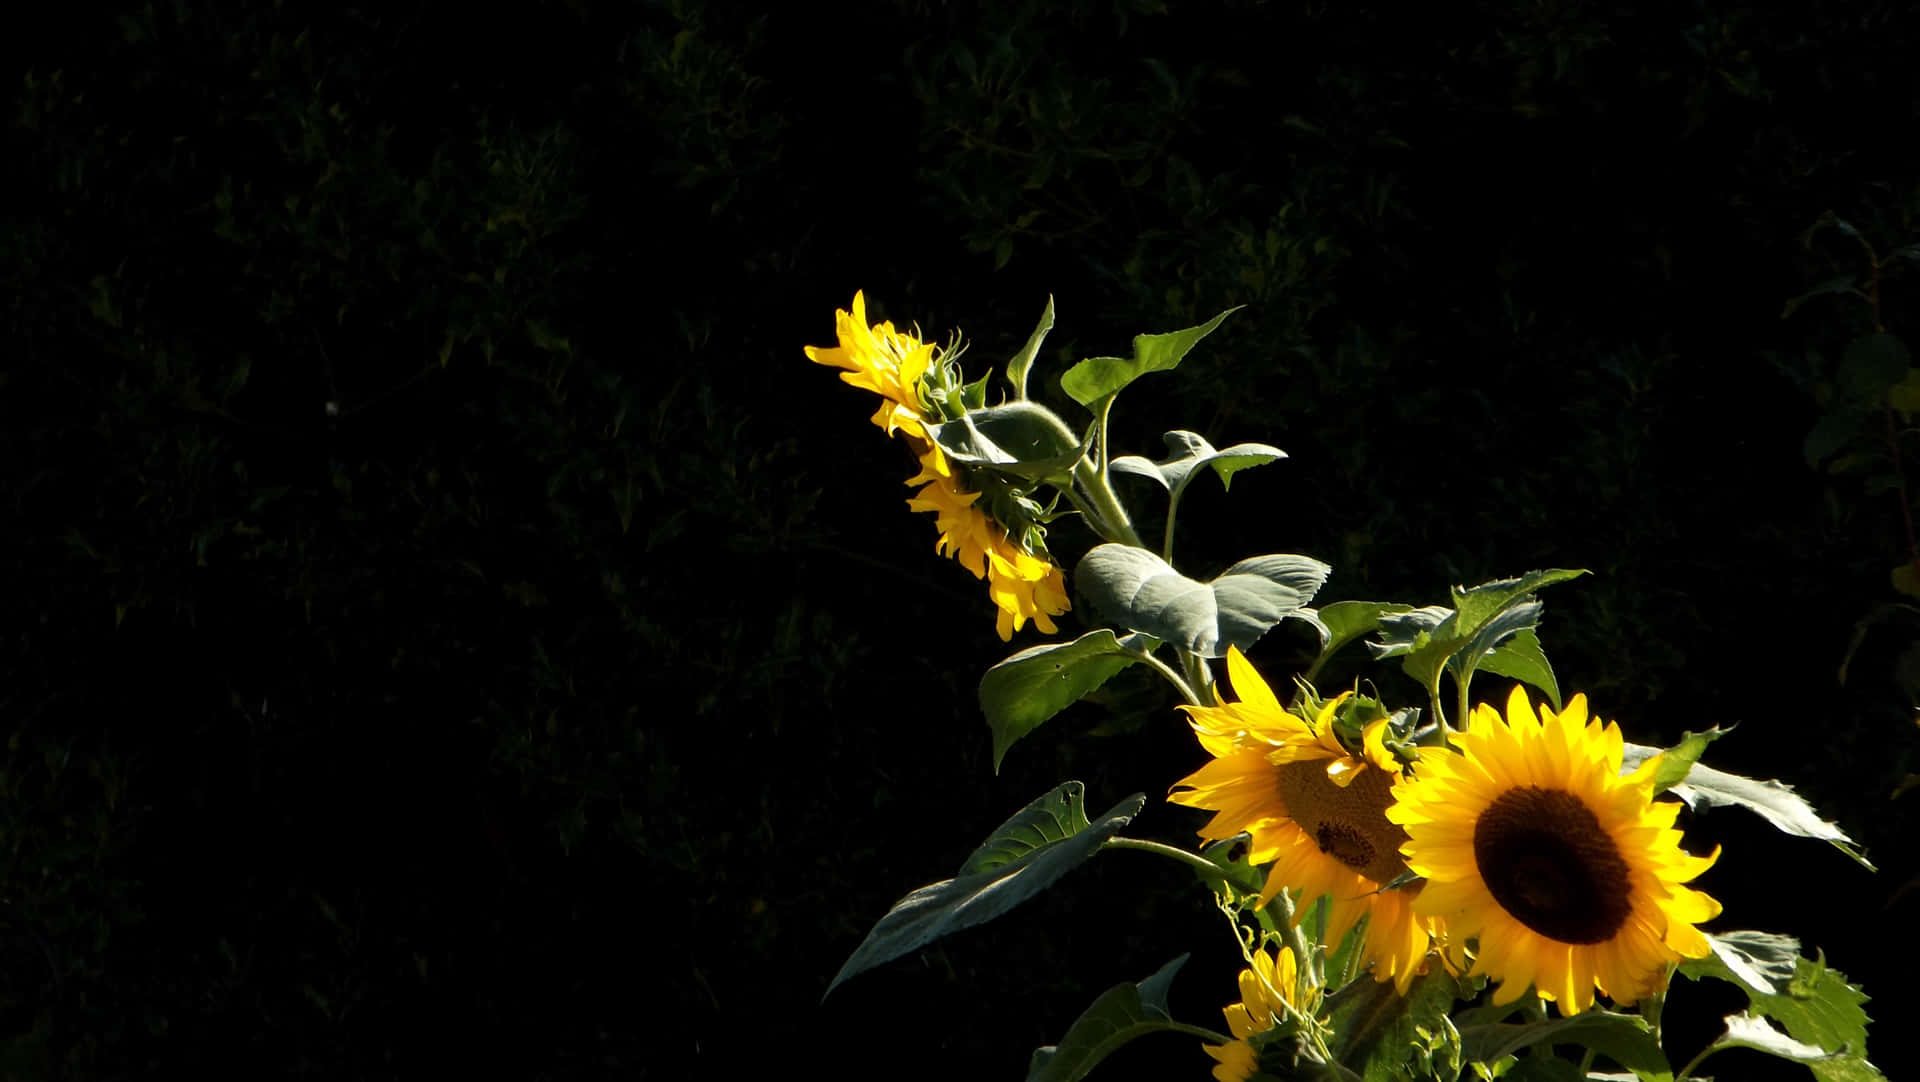 Schaudir Diese Wunderschöne Dunkle Sonnenblume An, Die Stolz In Der Sonne Steht. Wallpaper